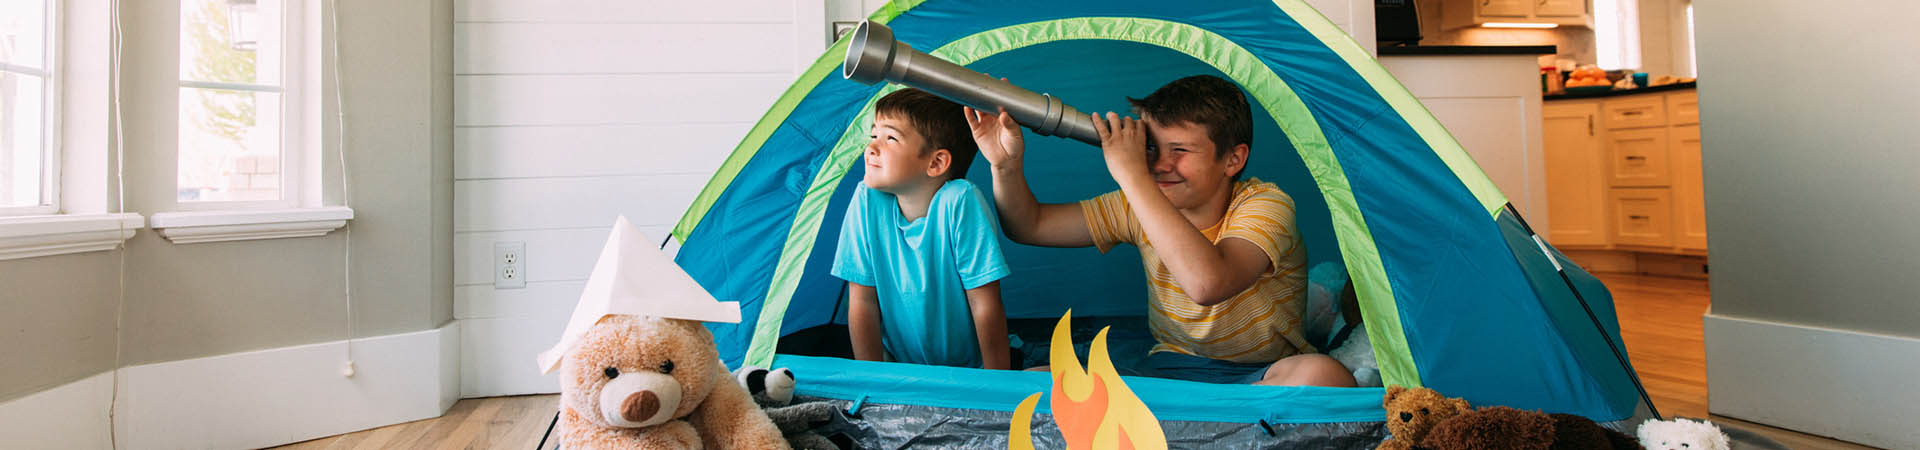 Bedeutung von Spielen – Jungs campen im Wohnzimmer.